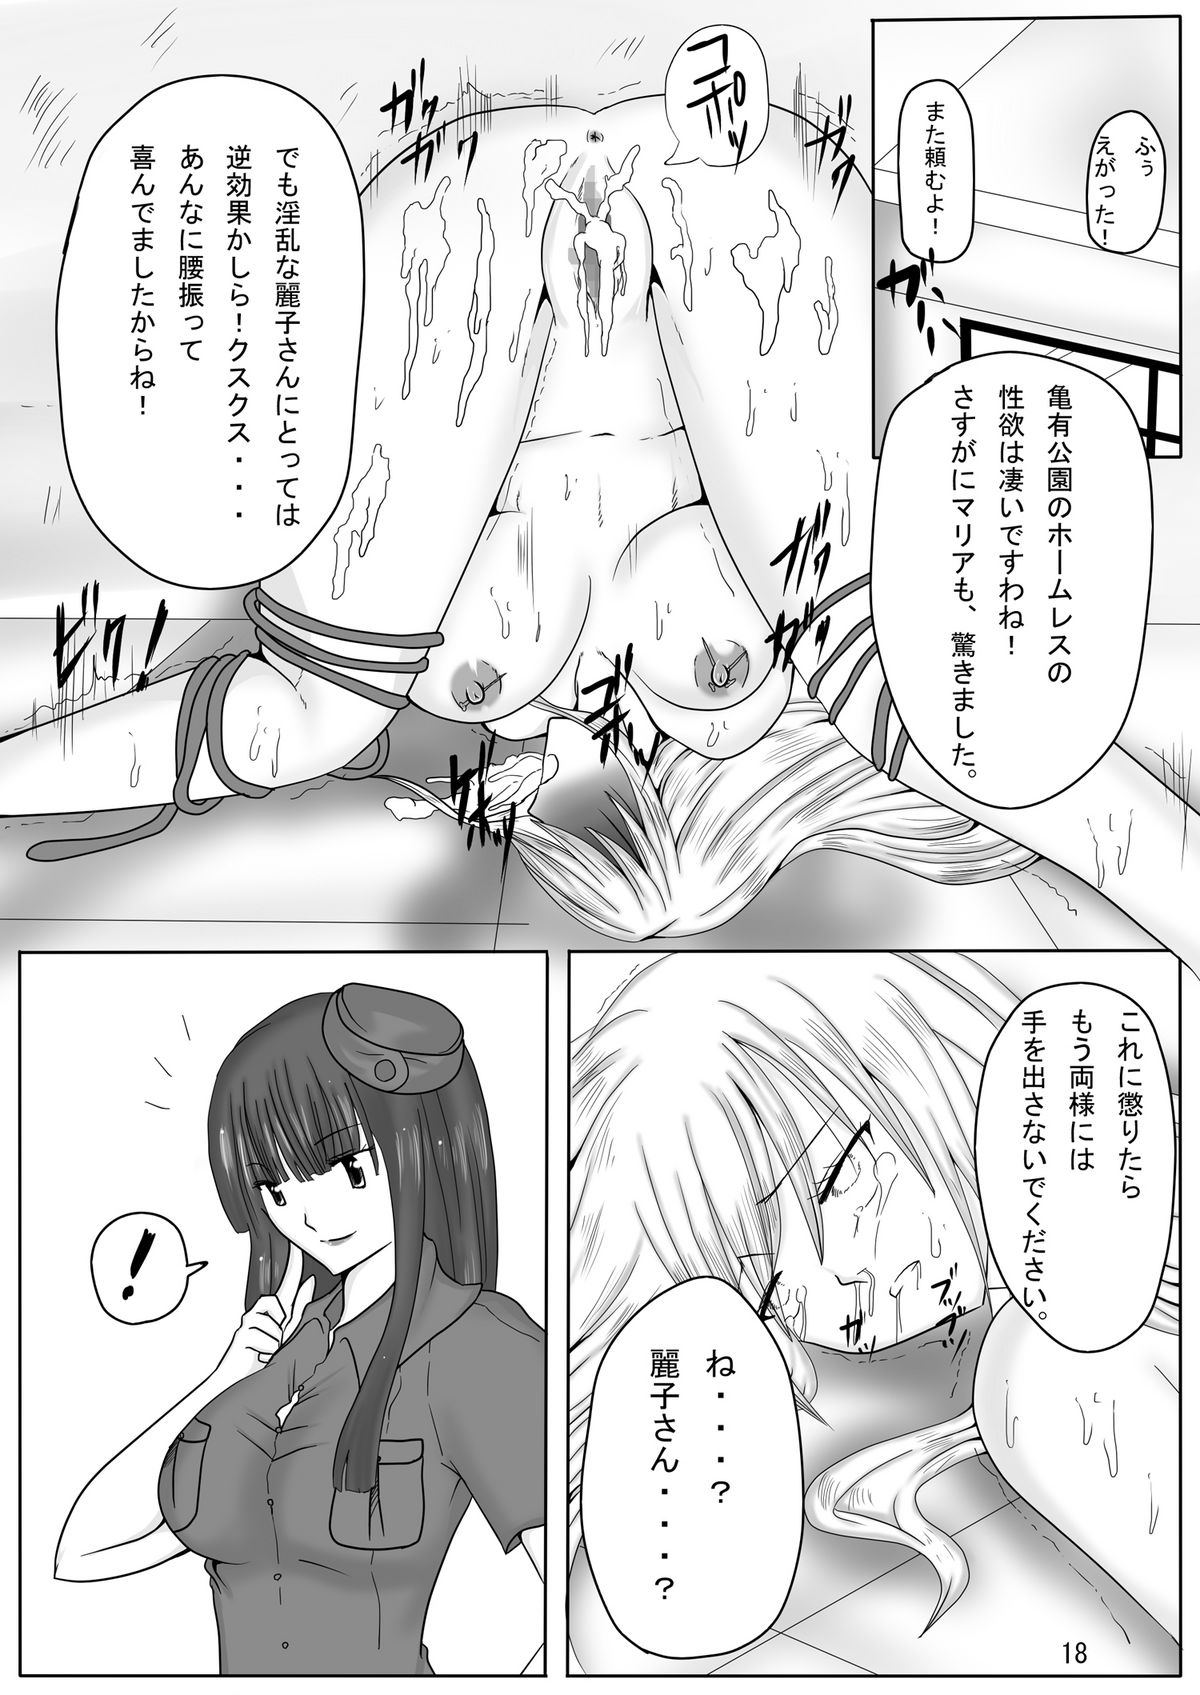 (CT18) [PintSize (Kitoha, TKS)] Jump Tales X Reiko, Funshiru Rape Hashutsujo (Kochikame) page 18 full